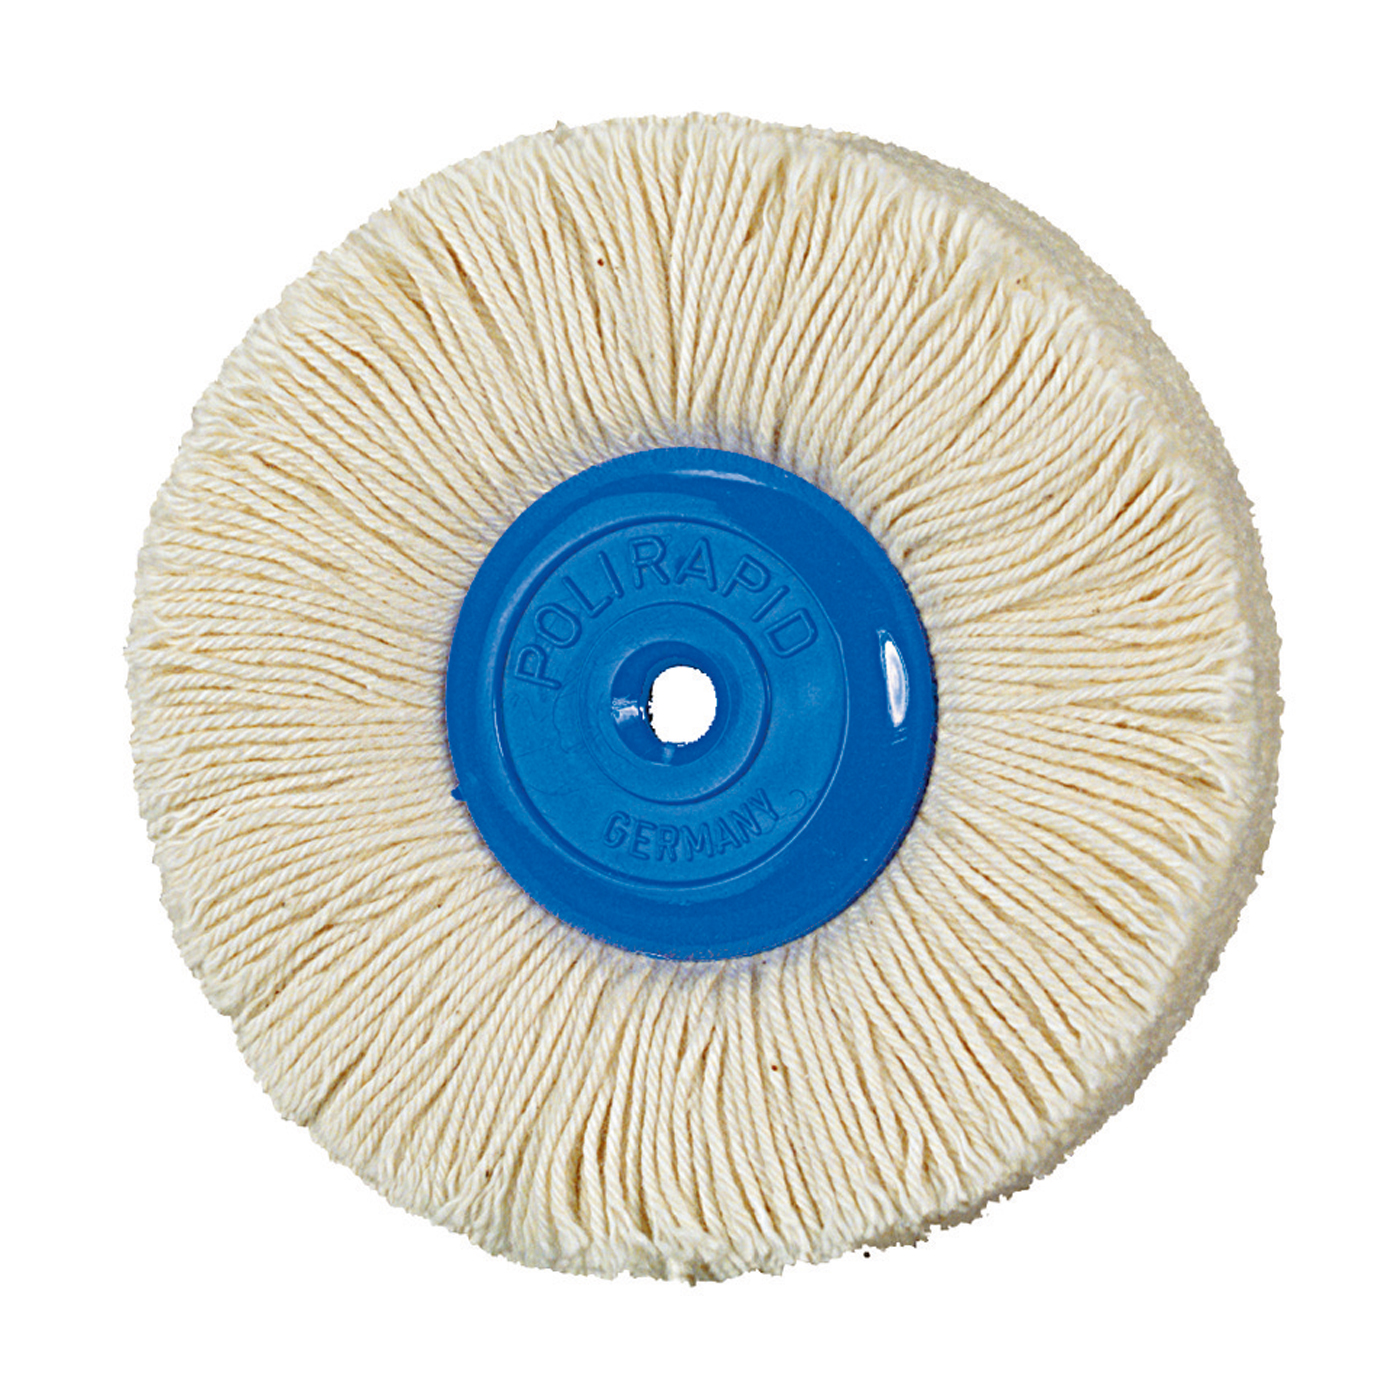 Yarn Brush, ø 90 mm - 1 piece